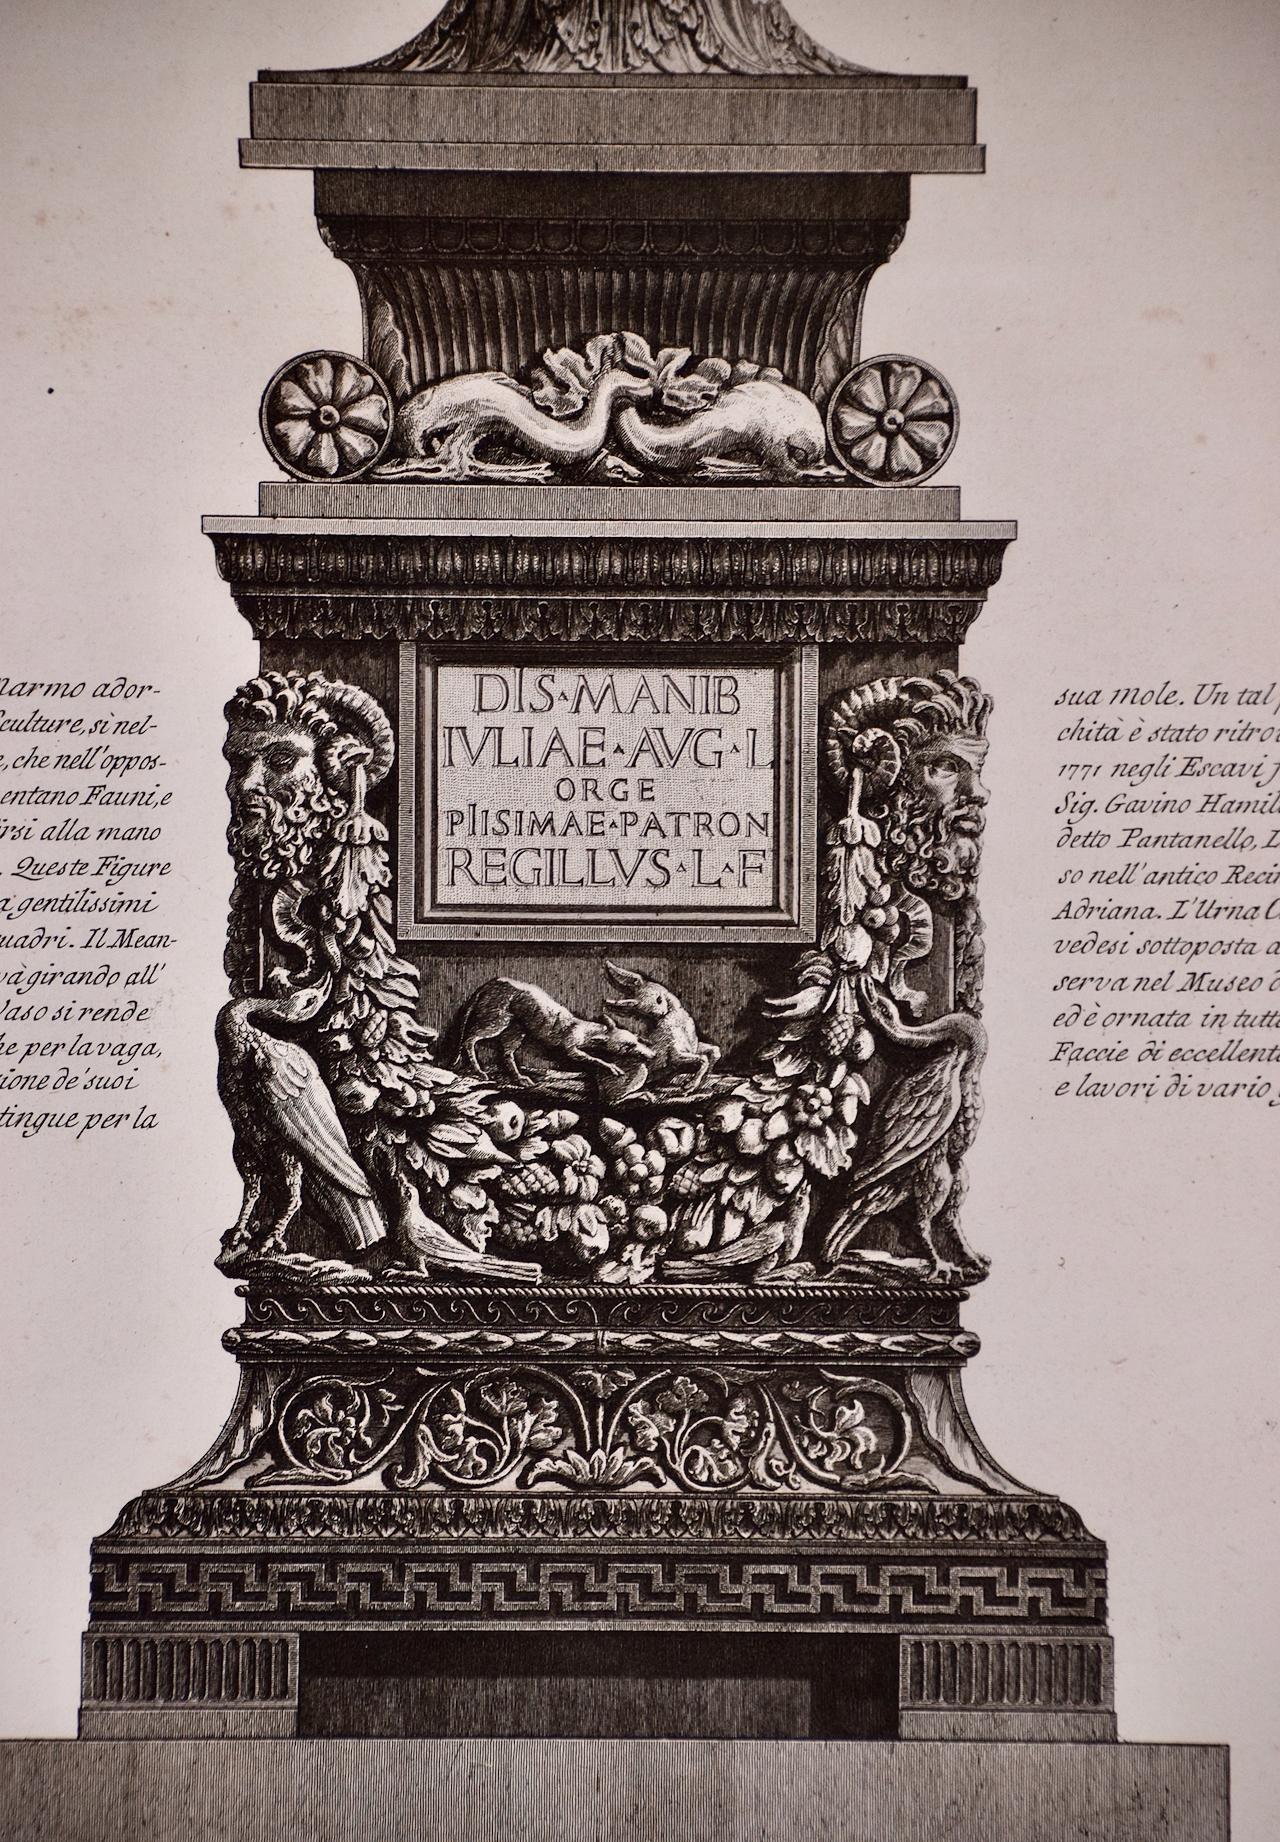 A.I.C. Piranesi encadrée, gravure à l'eau-forte d'un vase ancien en marbre provenant de la VILLA d'Hadrien - Beige Figurative Print par Giovanni Battista Piranesi